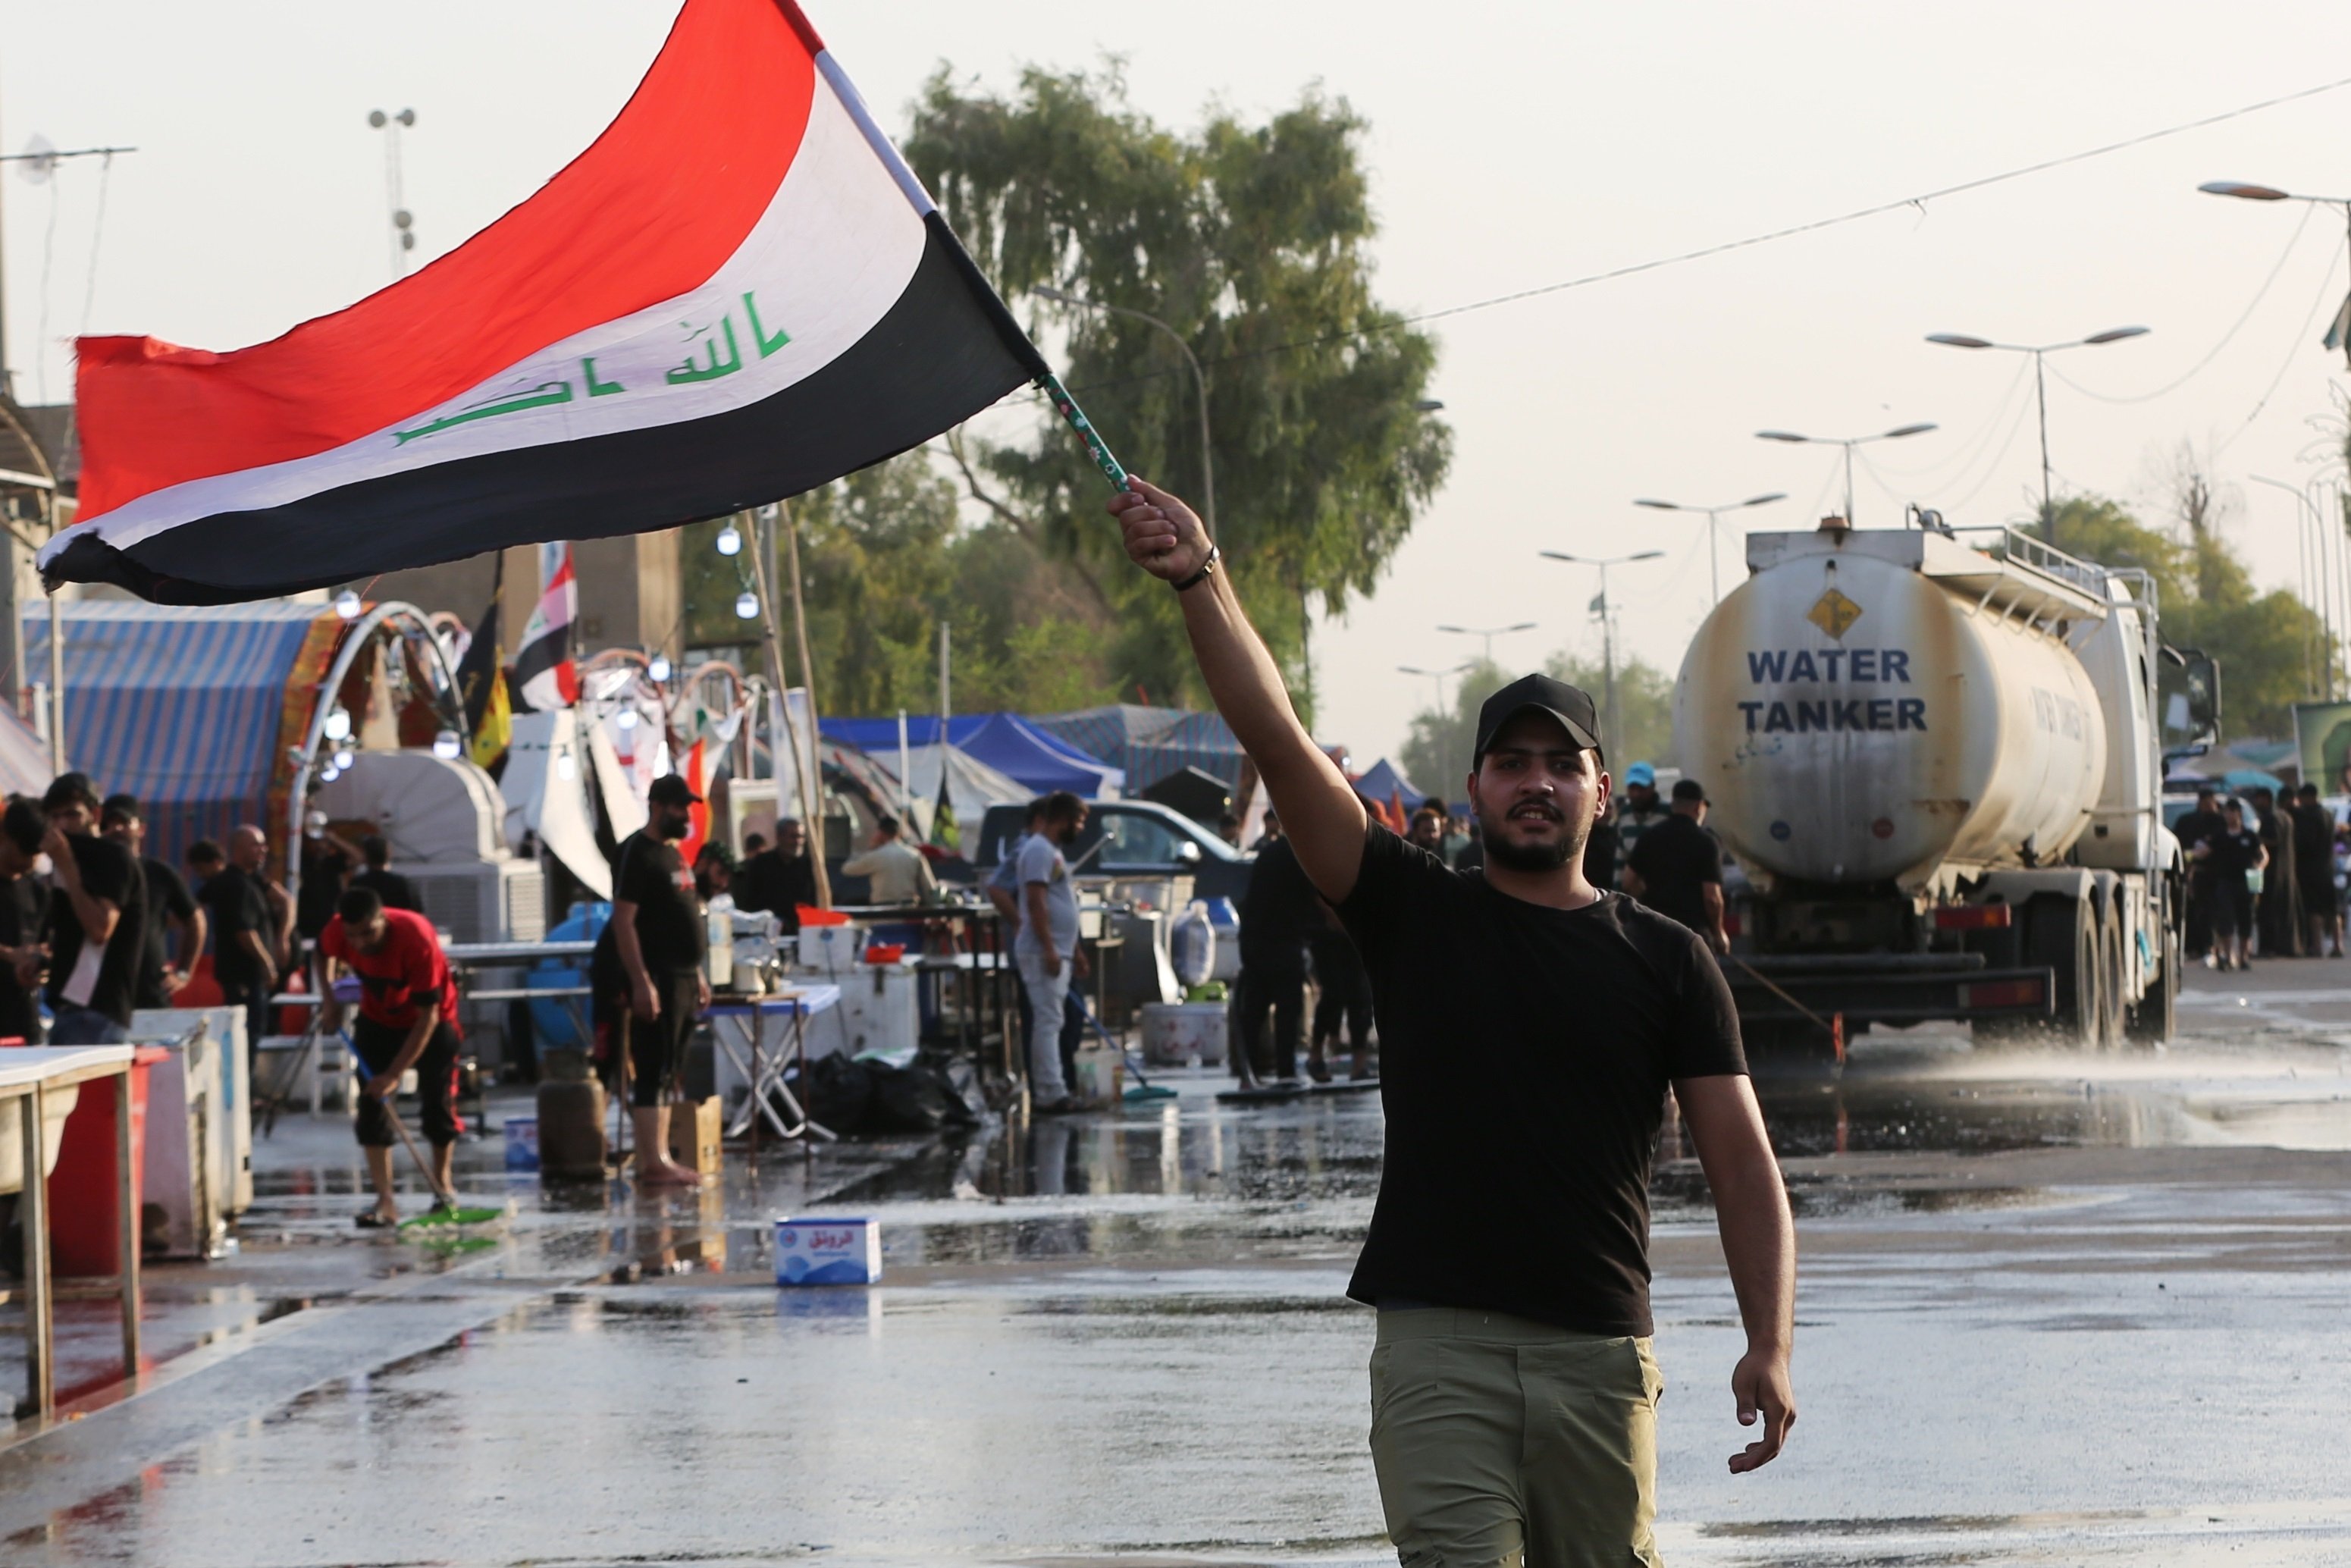 Dotze morts i toc de queda a l'Iraq després que el líder Al-Sadr anunciés que es "retira"